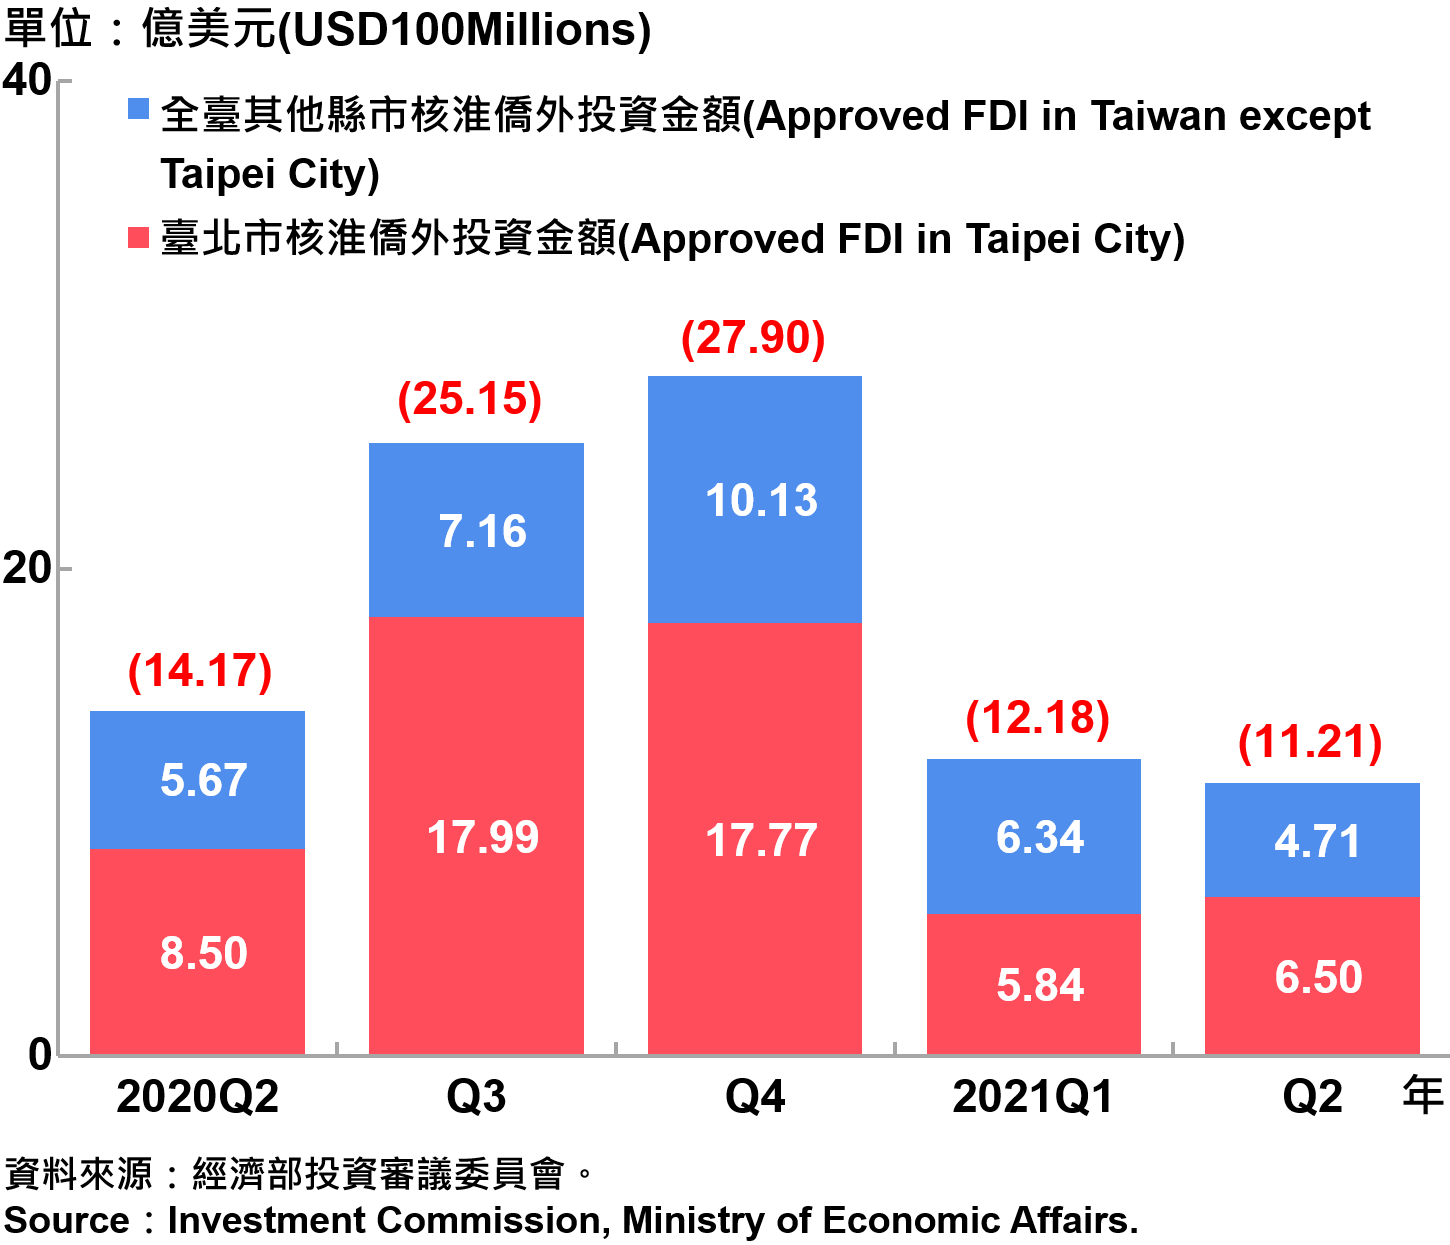 臺北市與全國僑外投資金額—2021Q2 Foreign Direct Investment（FDI）in Taipei City and Taiwan—2021Q2